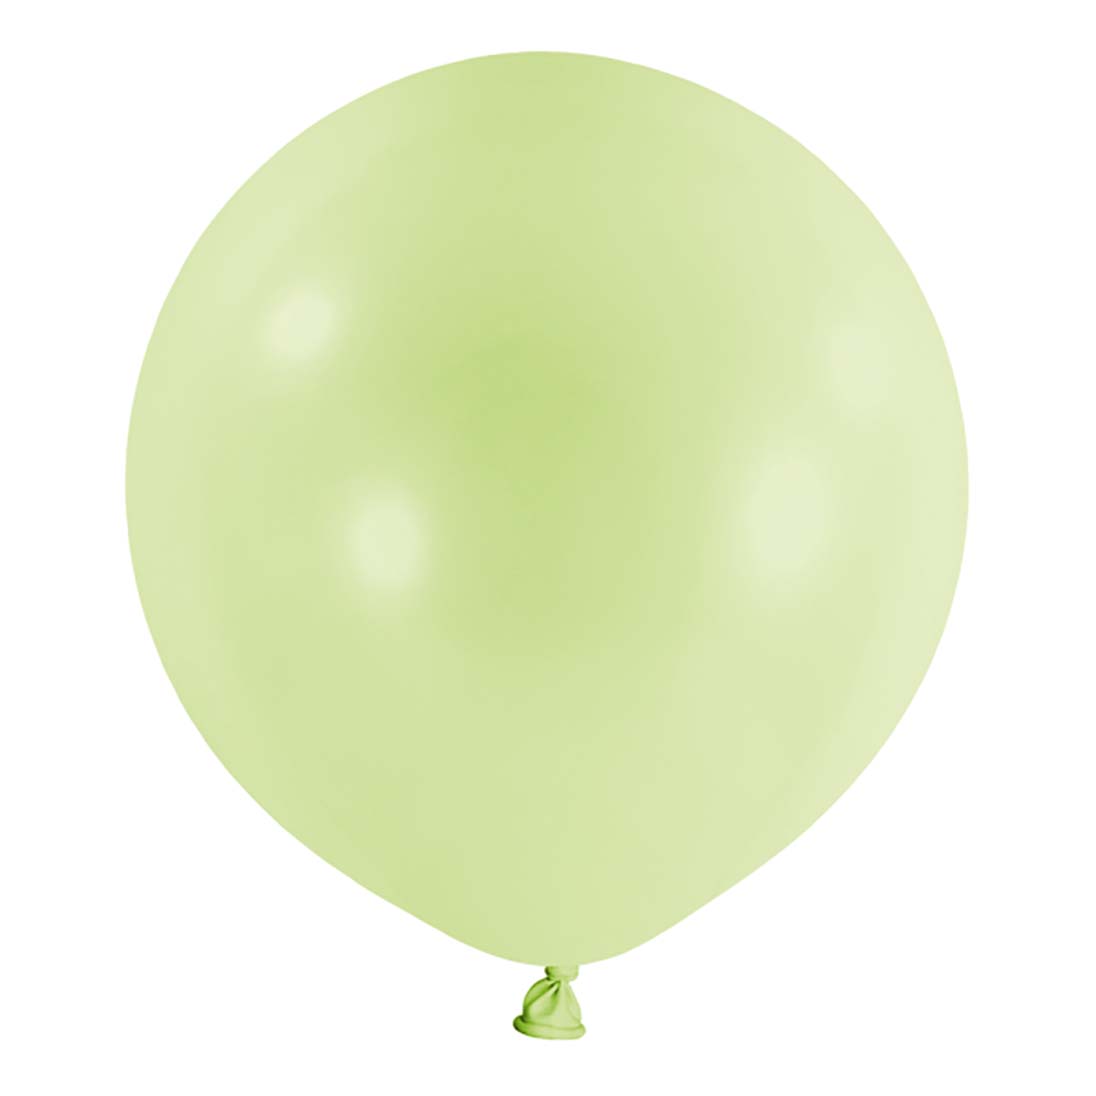 Pistachio Macaron Balloon 24in 4pcs